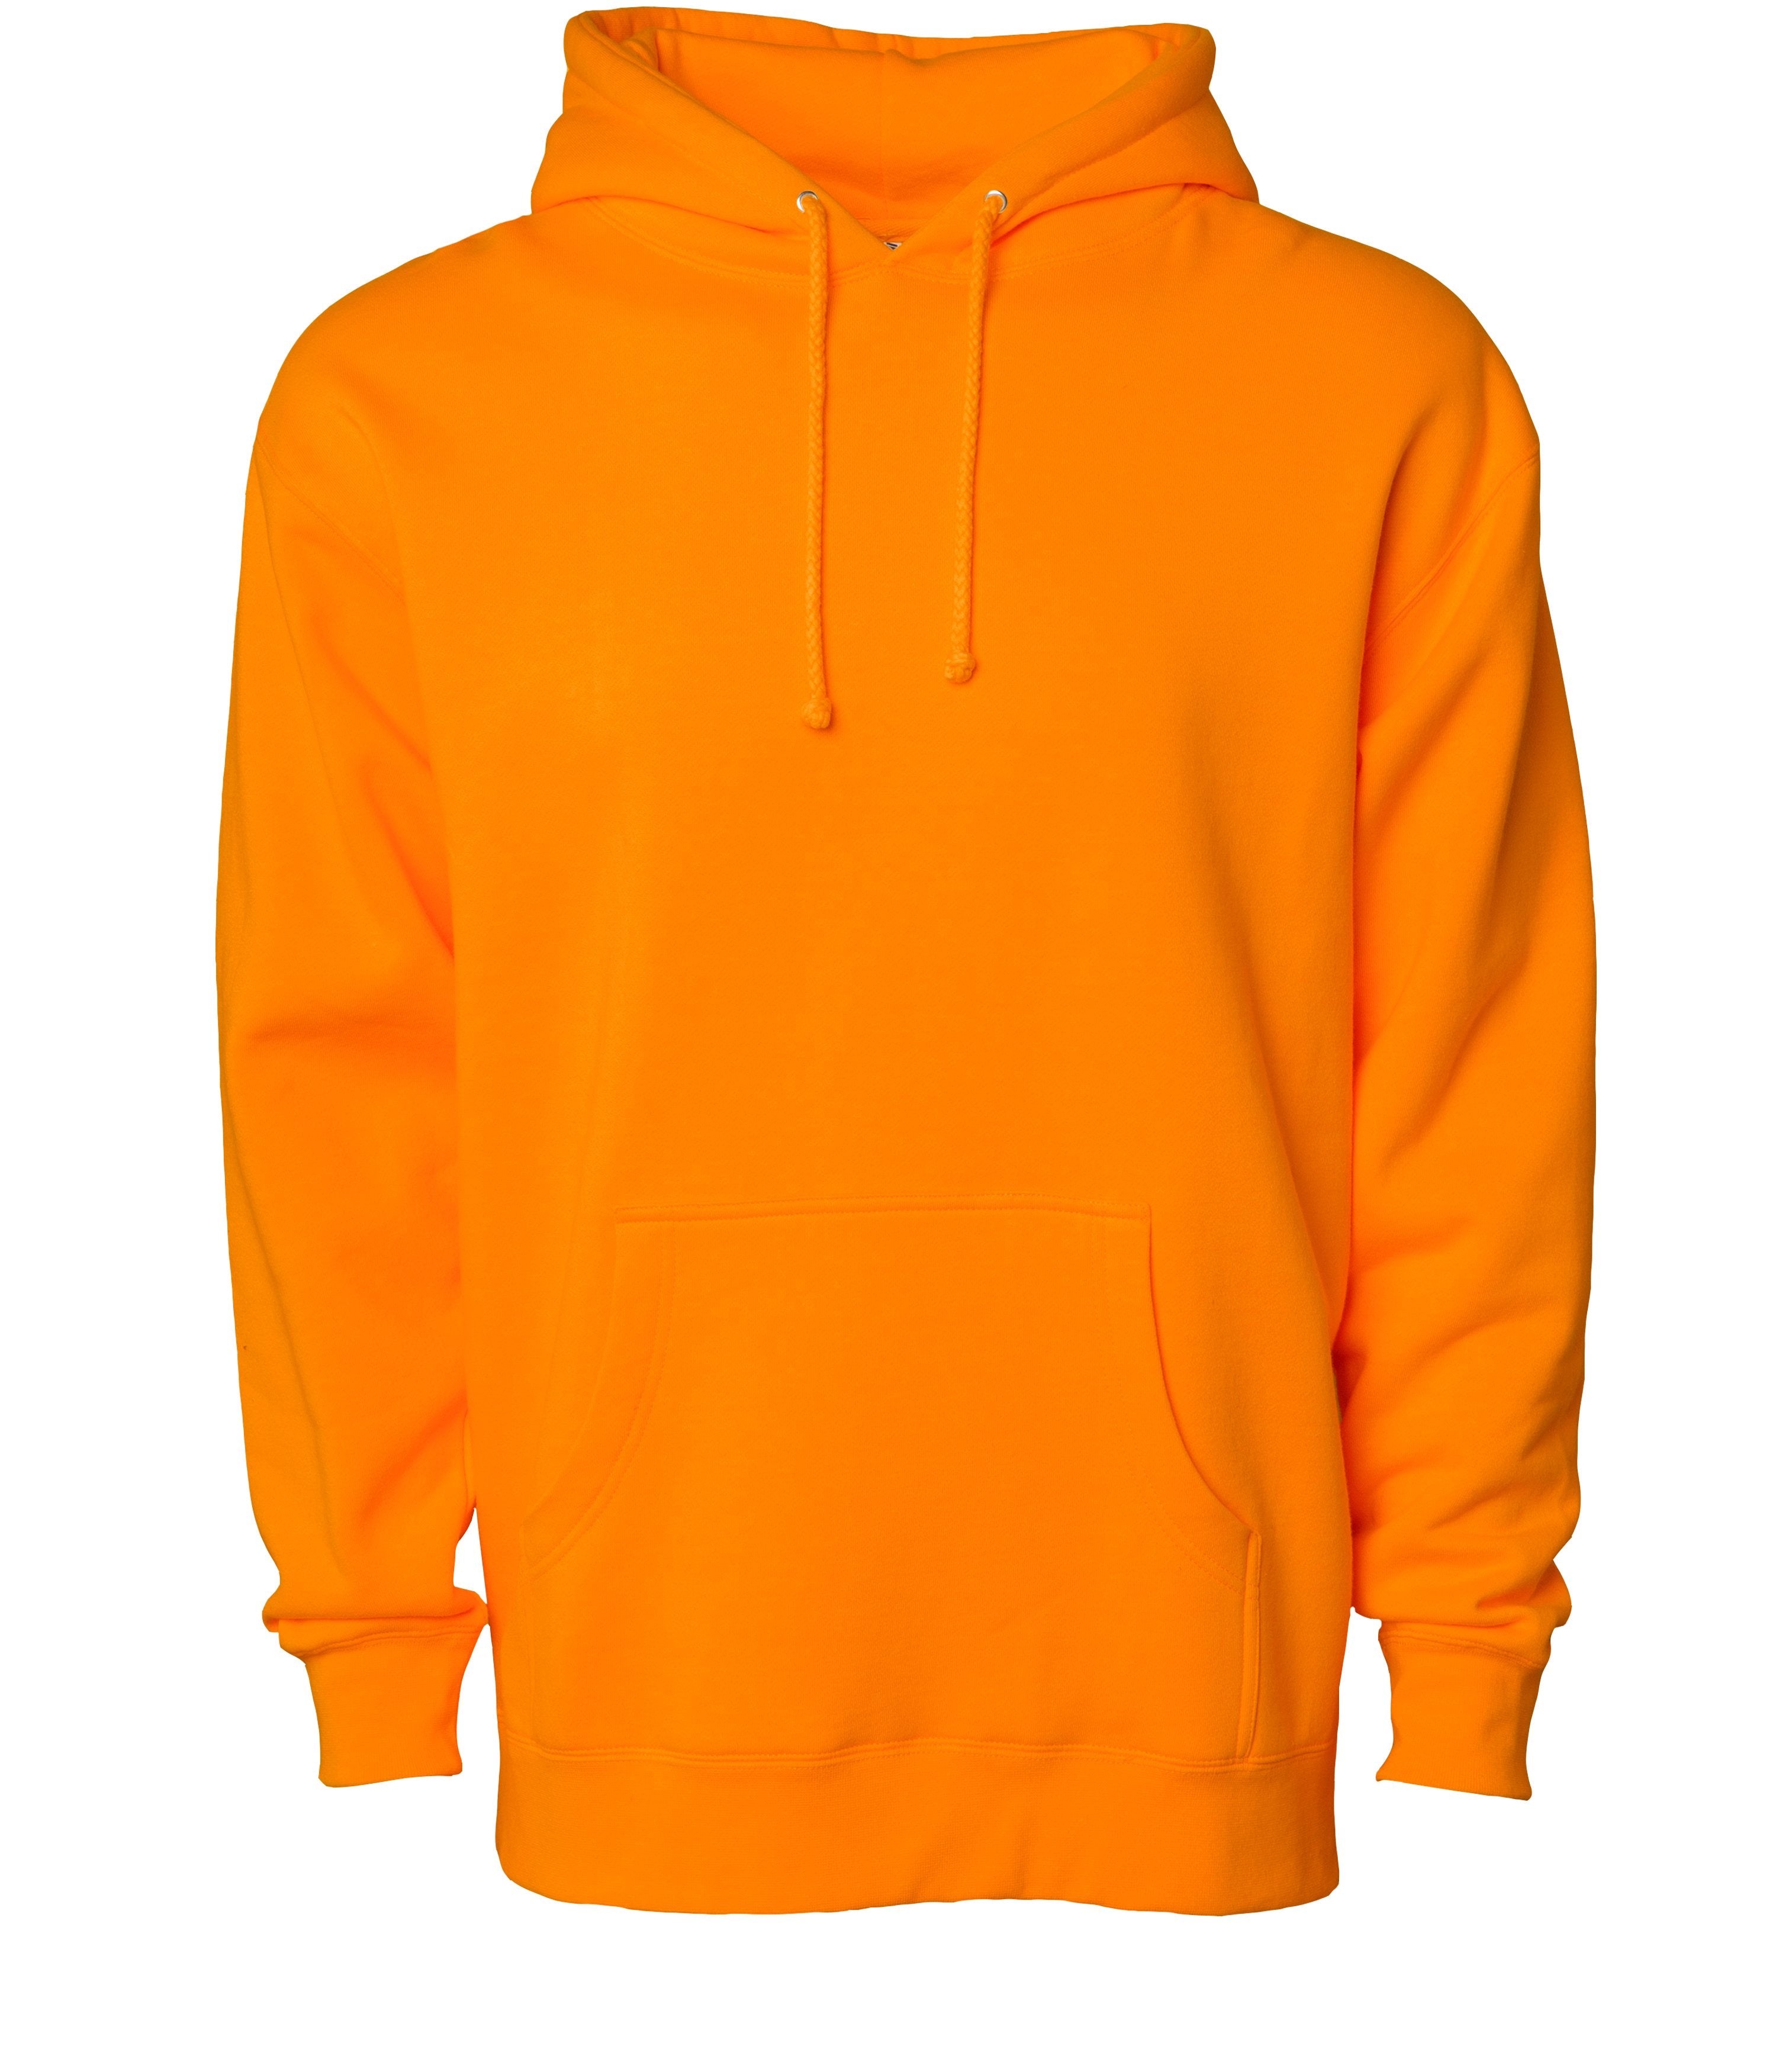 IND4000 Men's Heavyweight Hooded Pullover Sweatshirt in Safety Orange